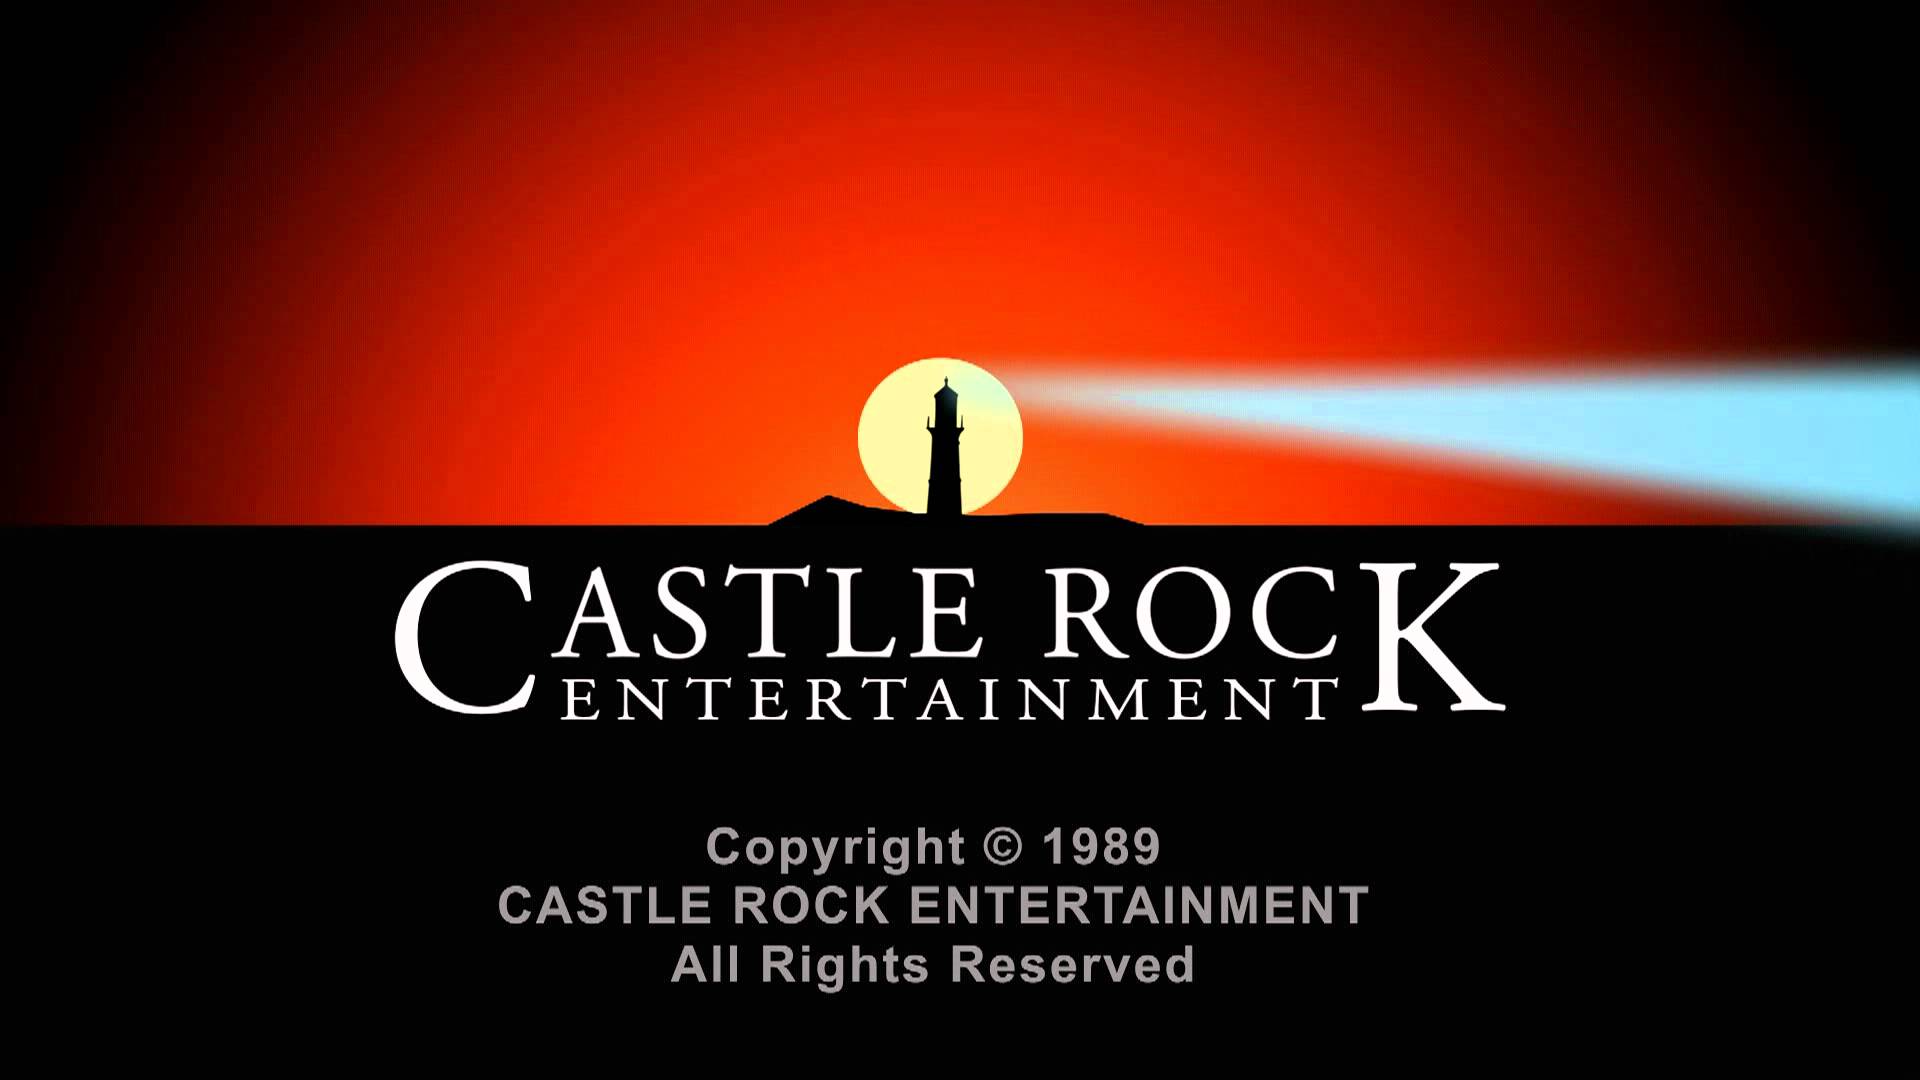 Castle rock entertainment. 